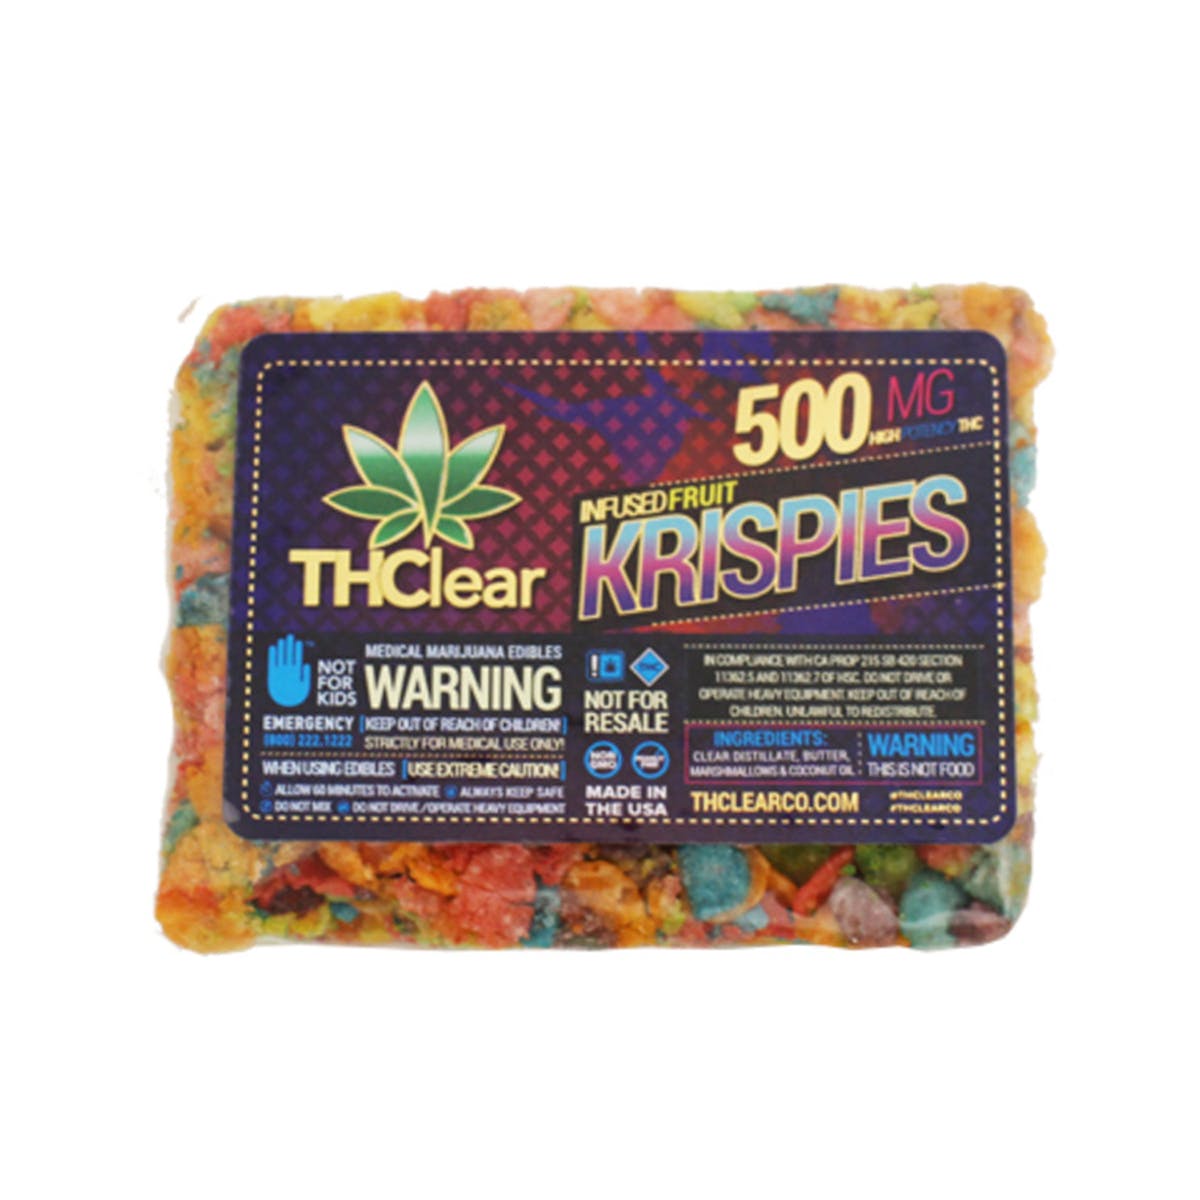 marijuana-dispensaries-ocgreenz-in-anaheim-fruit-krispies-cereal-bar-500mg